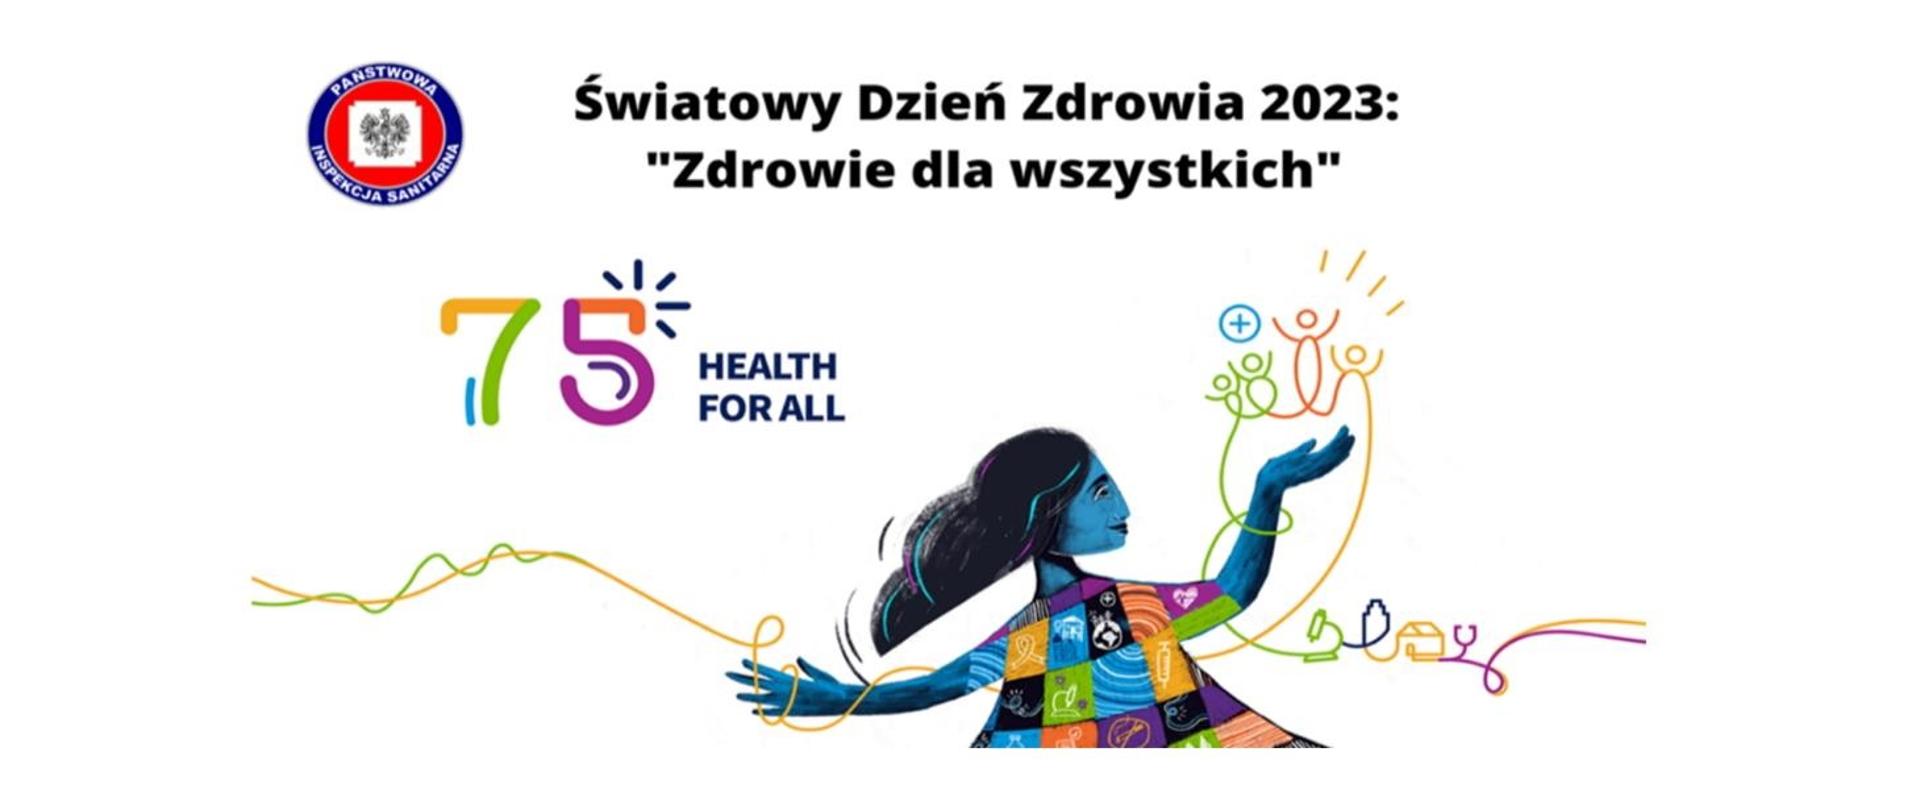 Światowy Dzień Zdrowia 2023: "Zdrowie dla wszystkich"